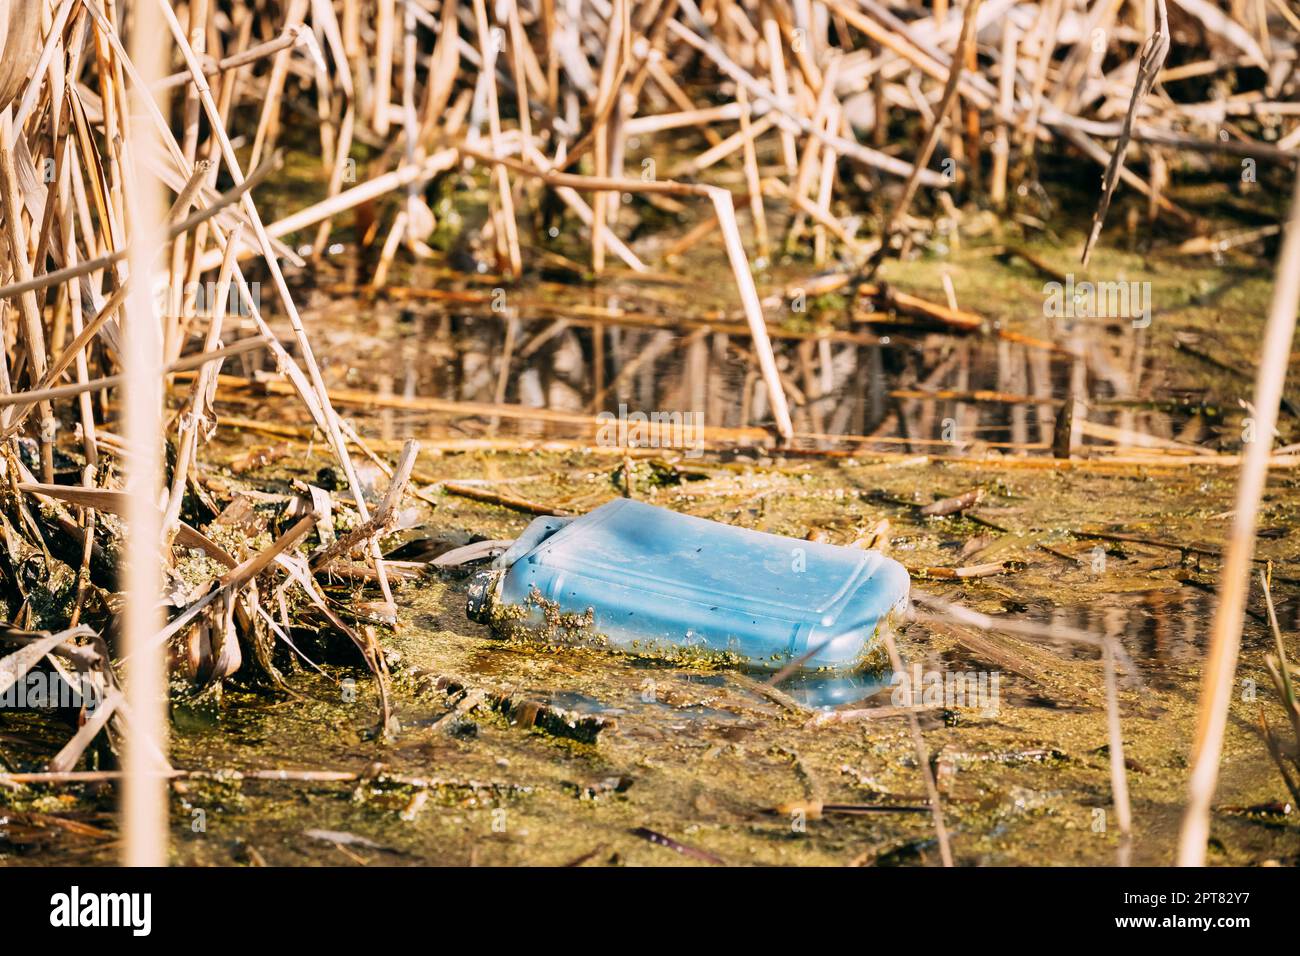 Ancien bidon en plastique flotte dans l'eau des marais ou d'un étang. Utilisé des matériaux d'emballage vide laissé dans l'eau. Concept de catastrophe écologique déchets écologique Pollut Banque D'Images